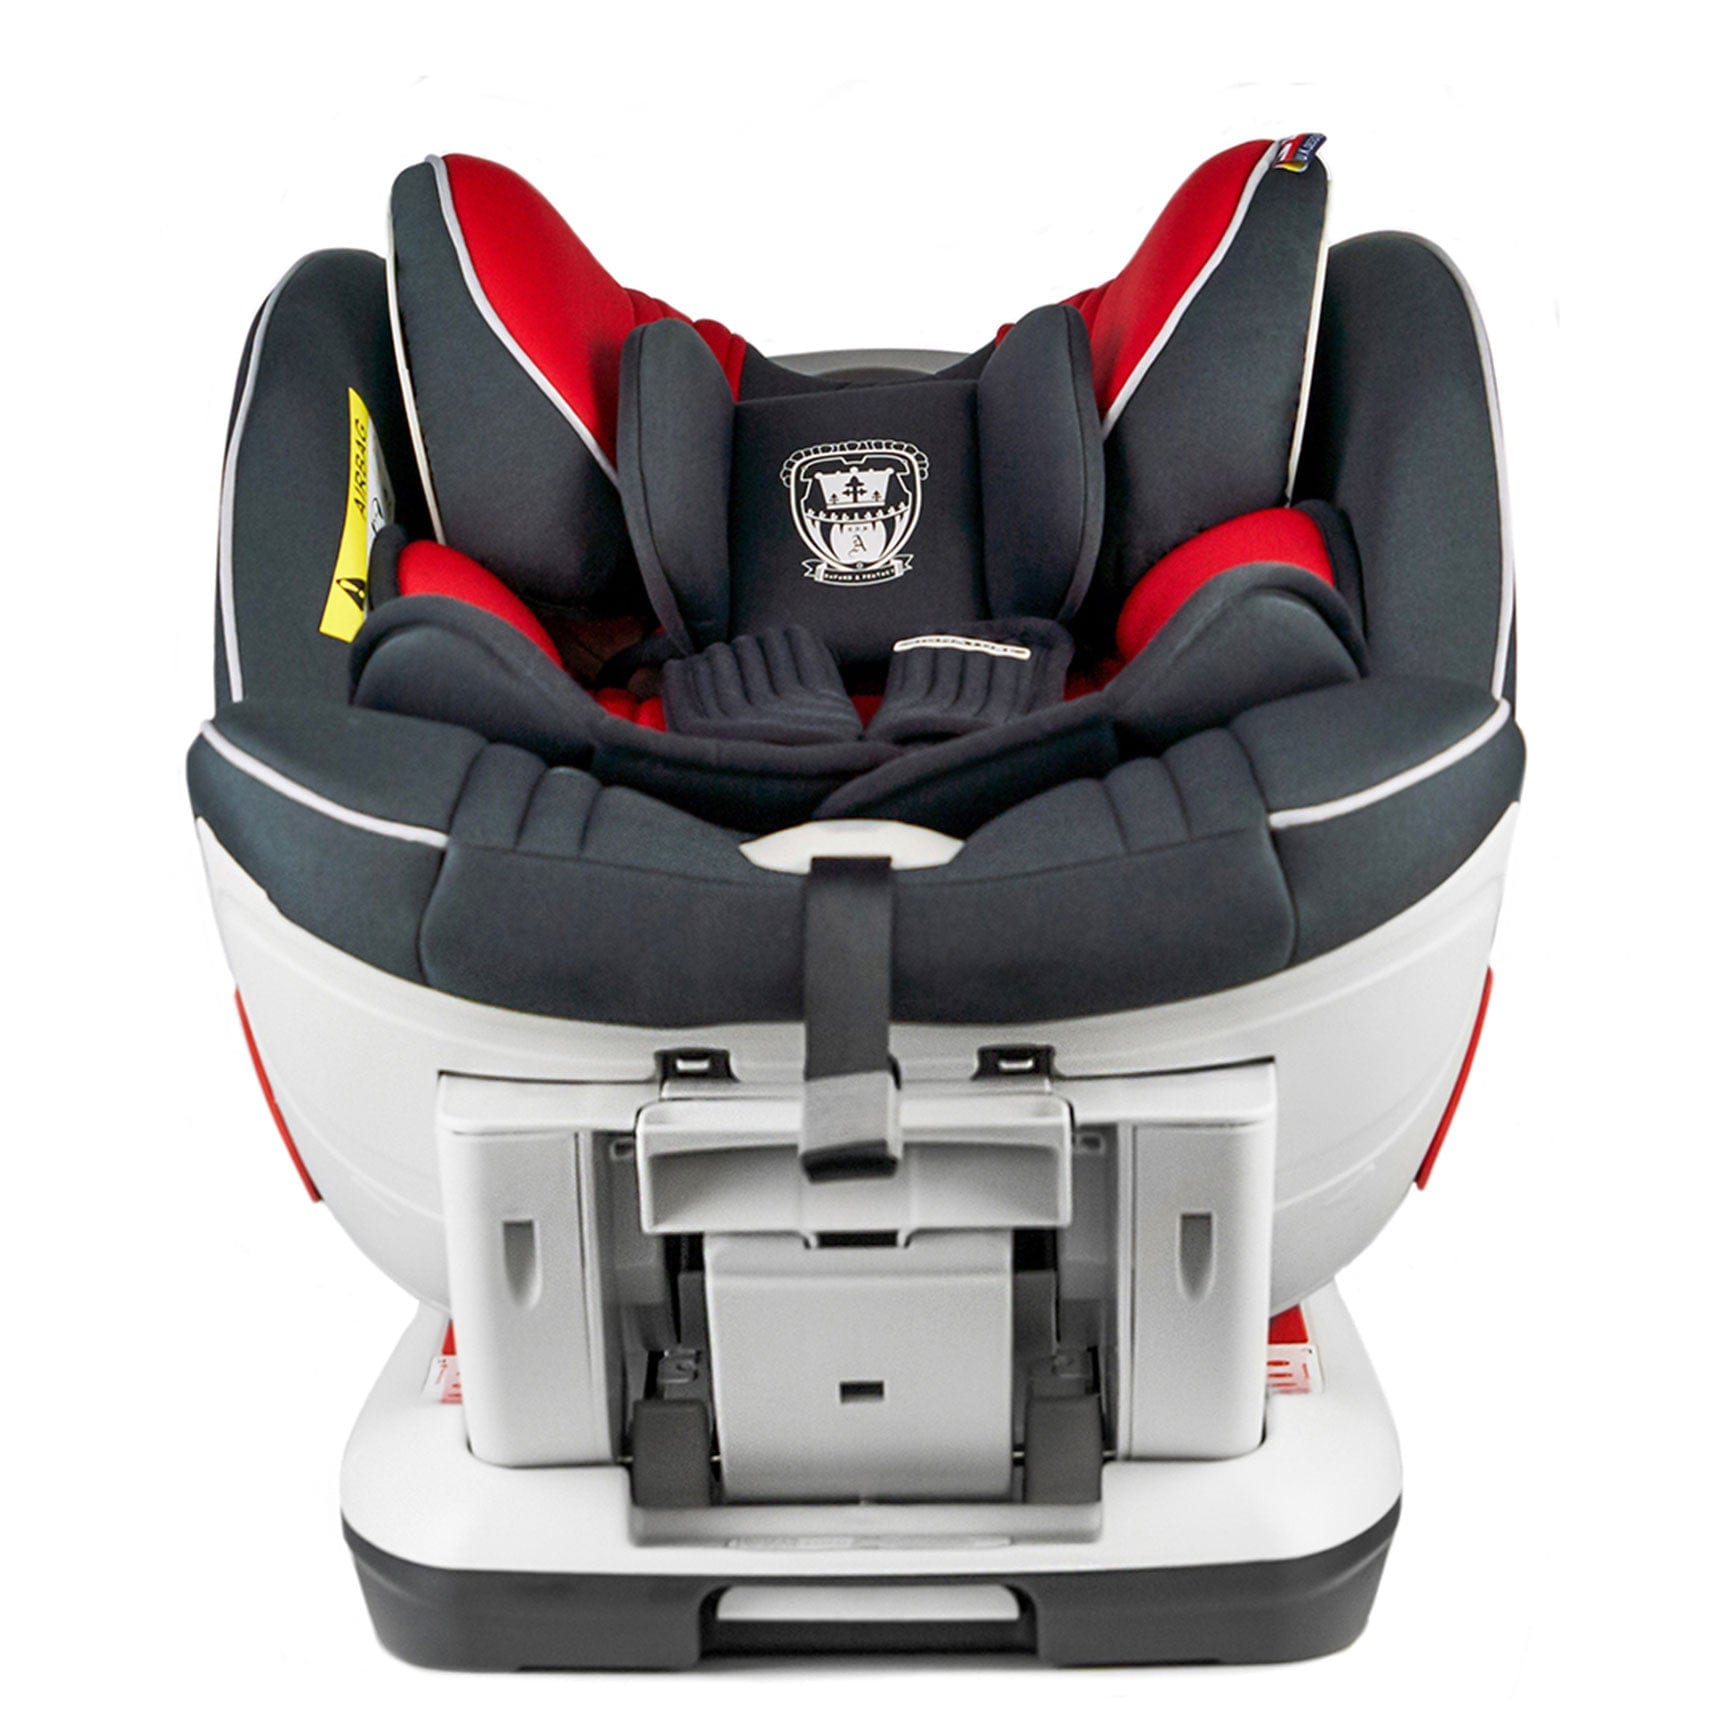 Cozy N Safe Combination Car Seats Cozy N Safe Arthur Car Seat - Red EST-528-2